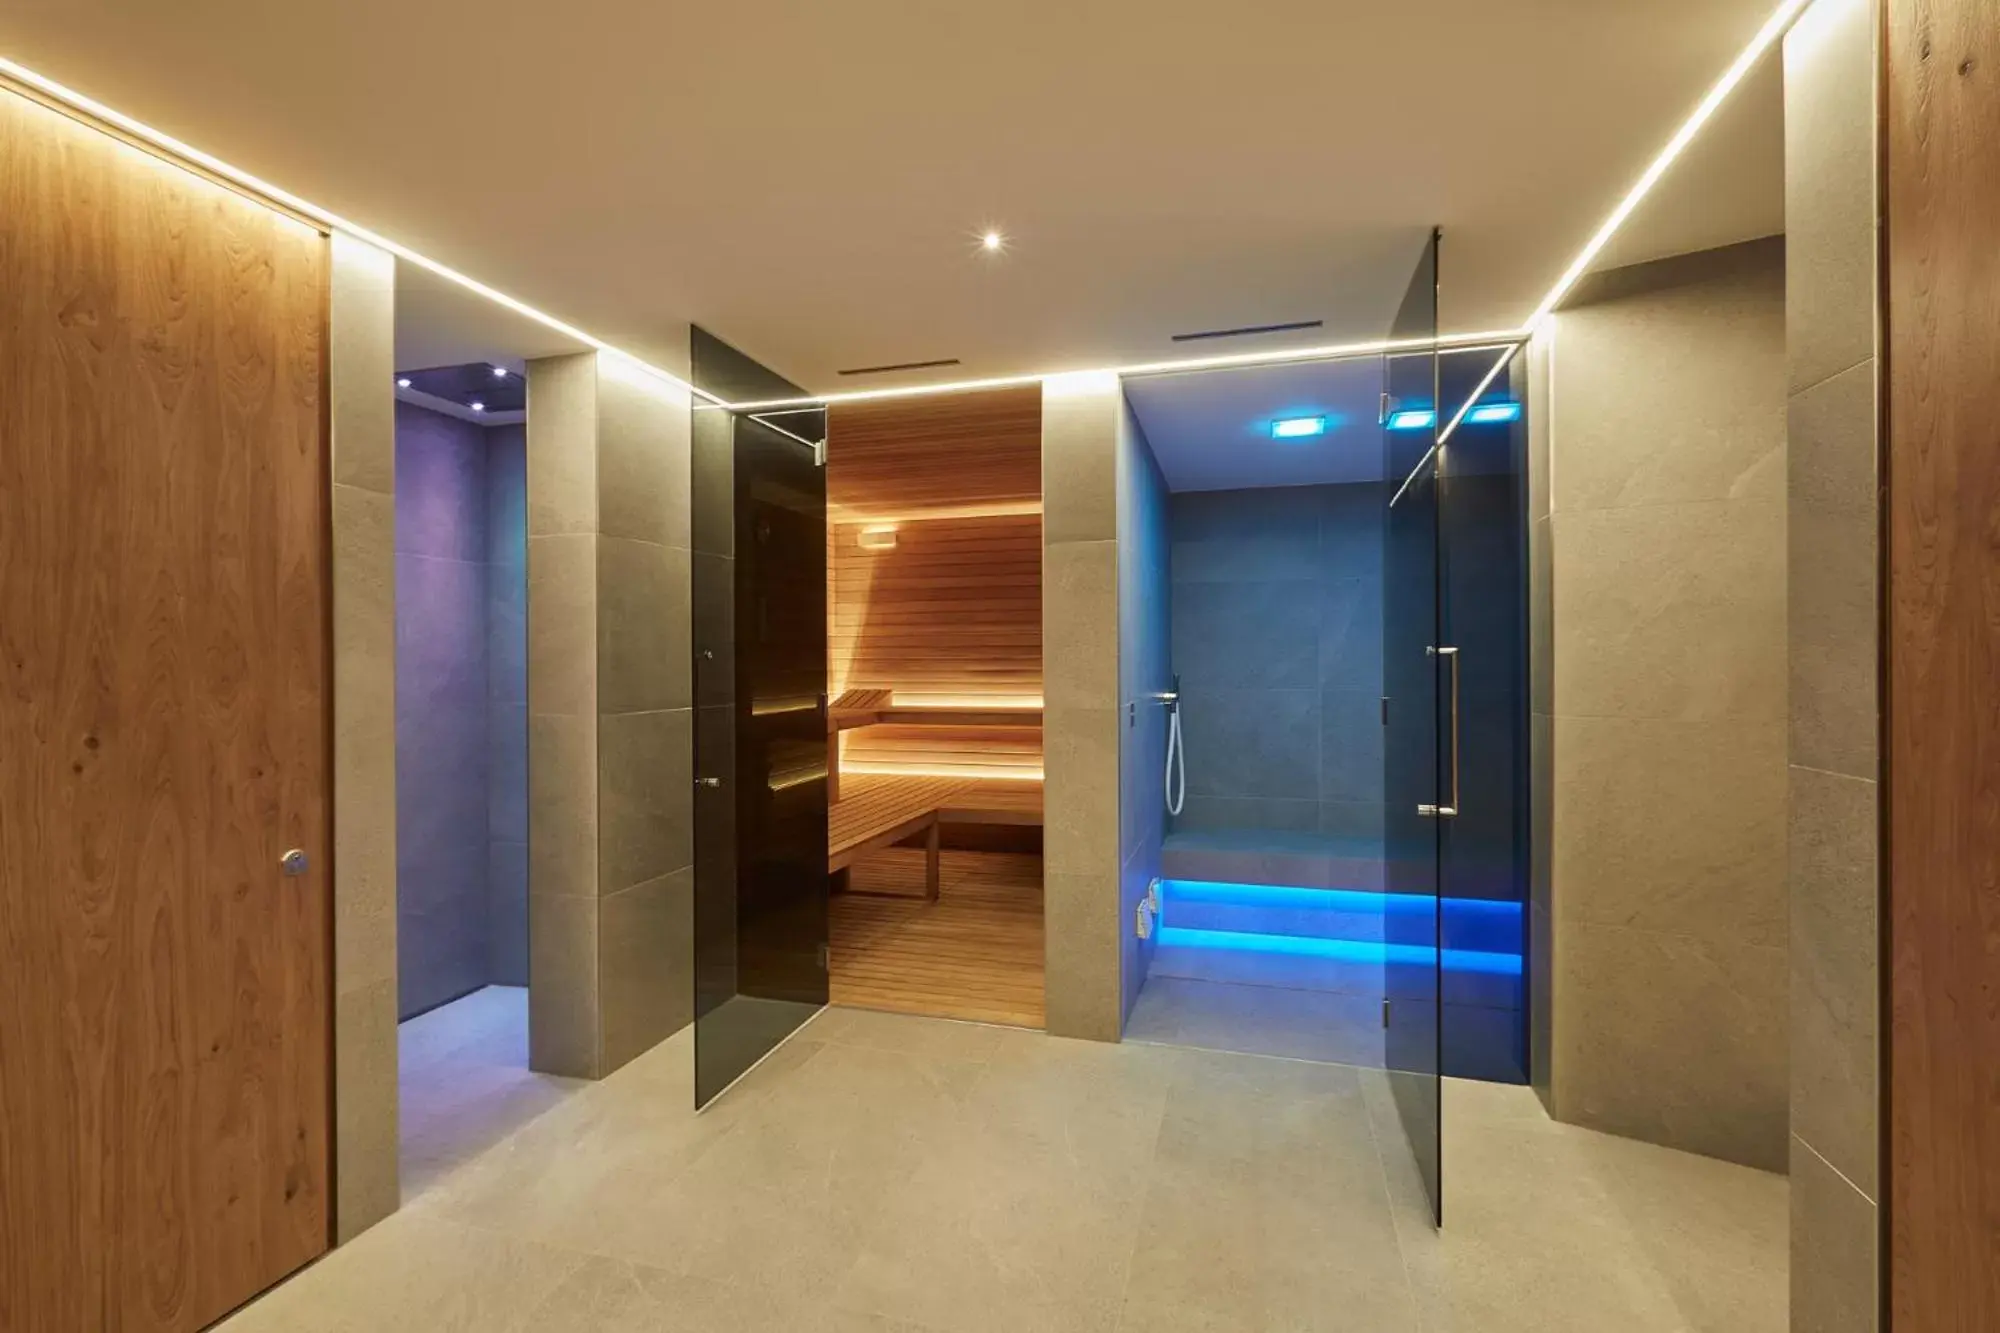 Spa and wellness centre/facilities, Bathroom in Dimora Degli Dei